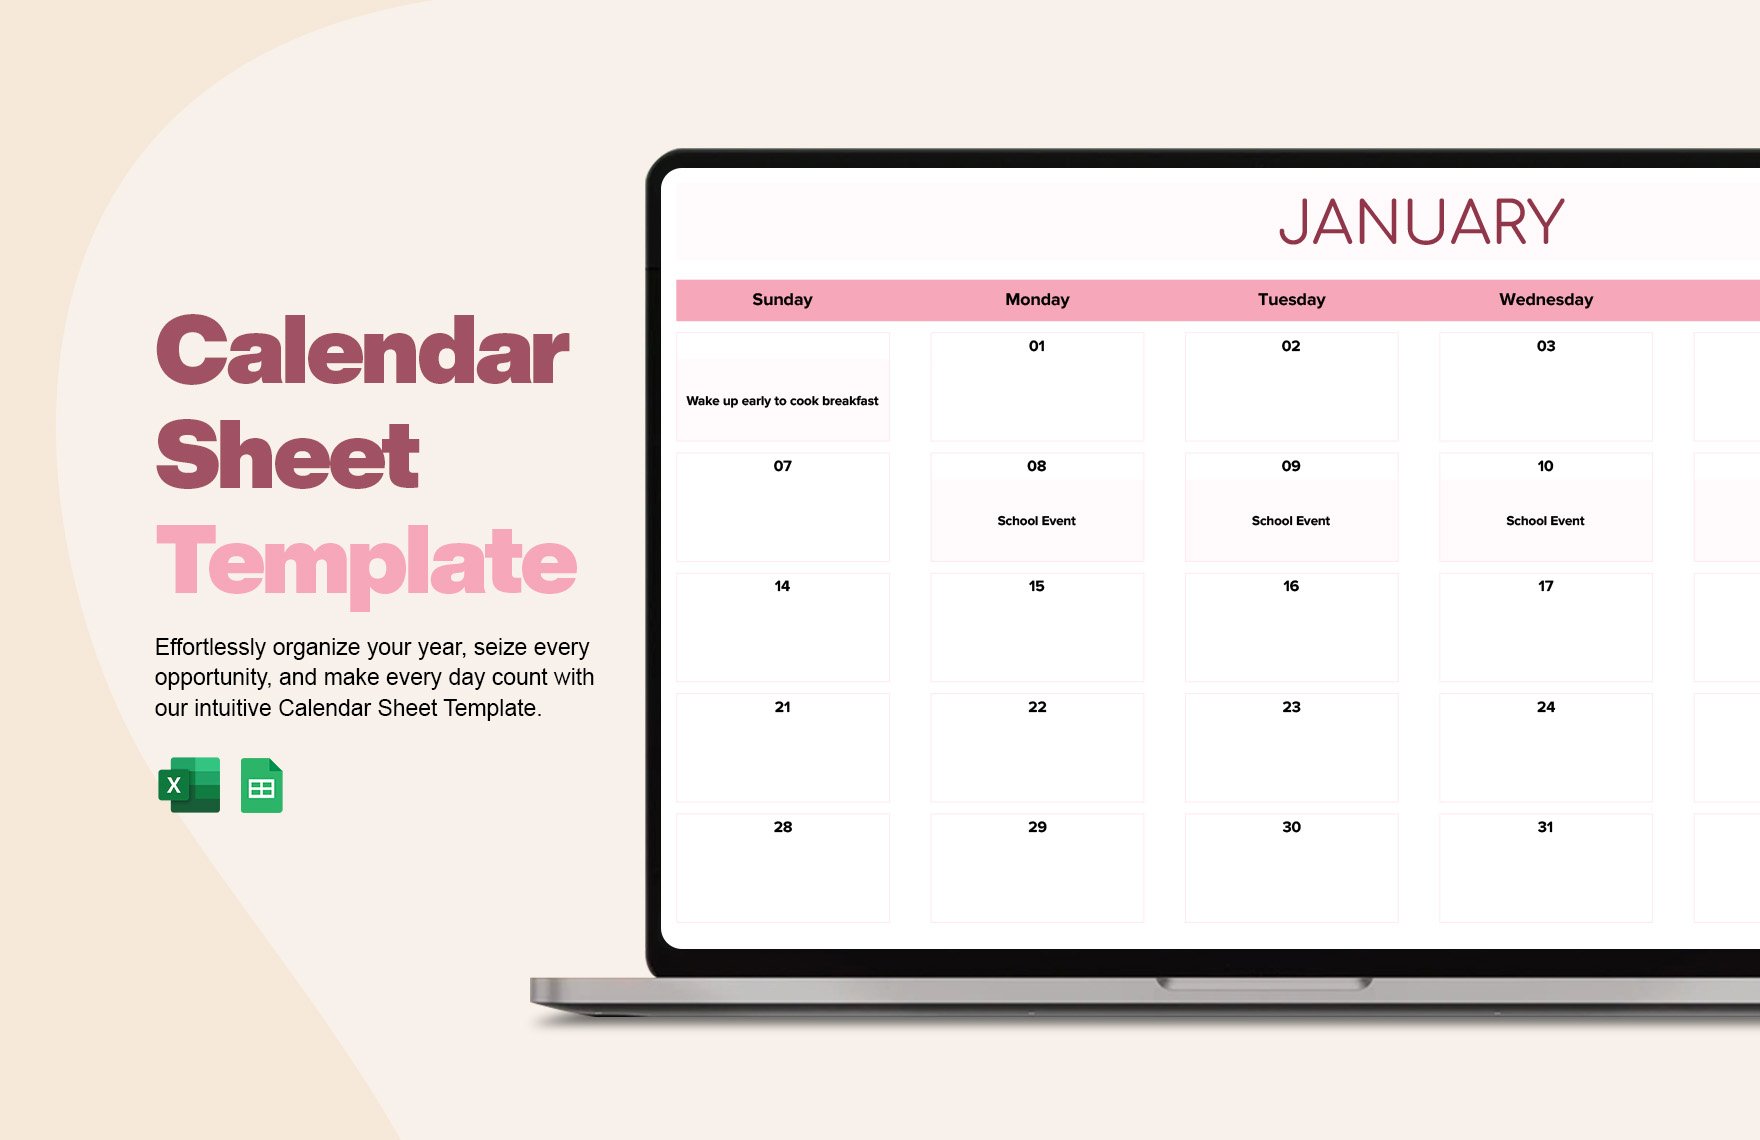 Calendar Sheet Template